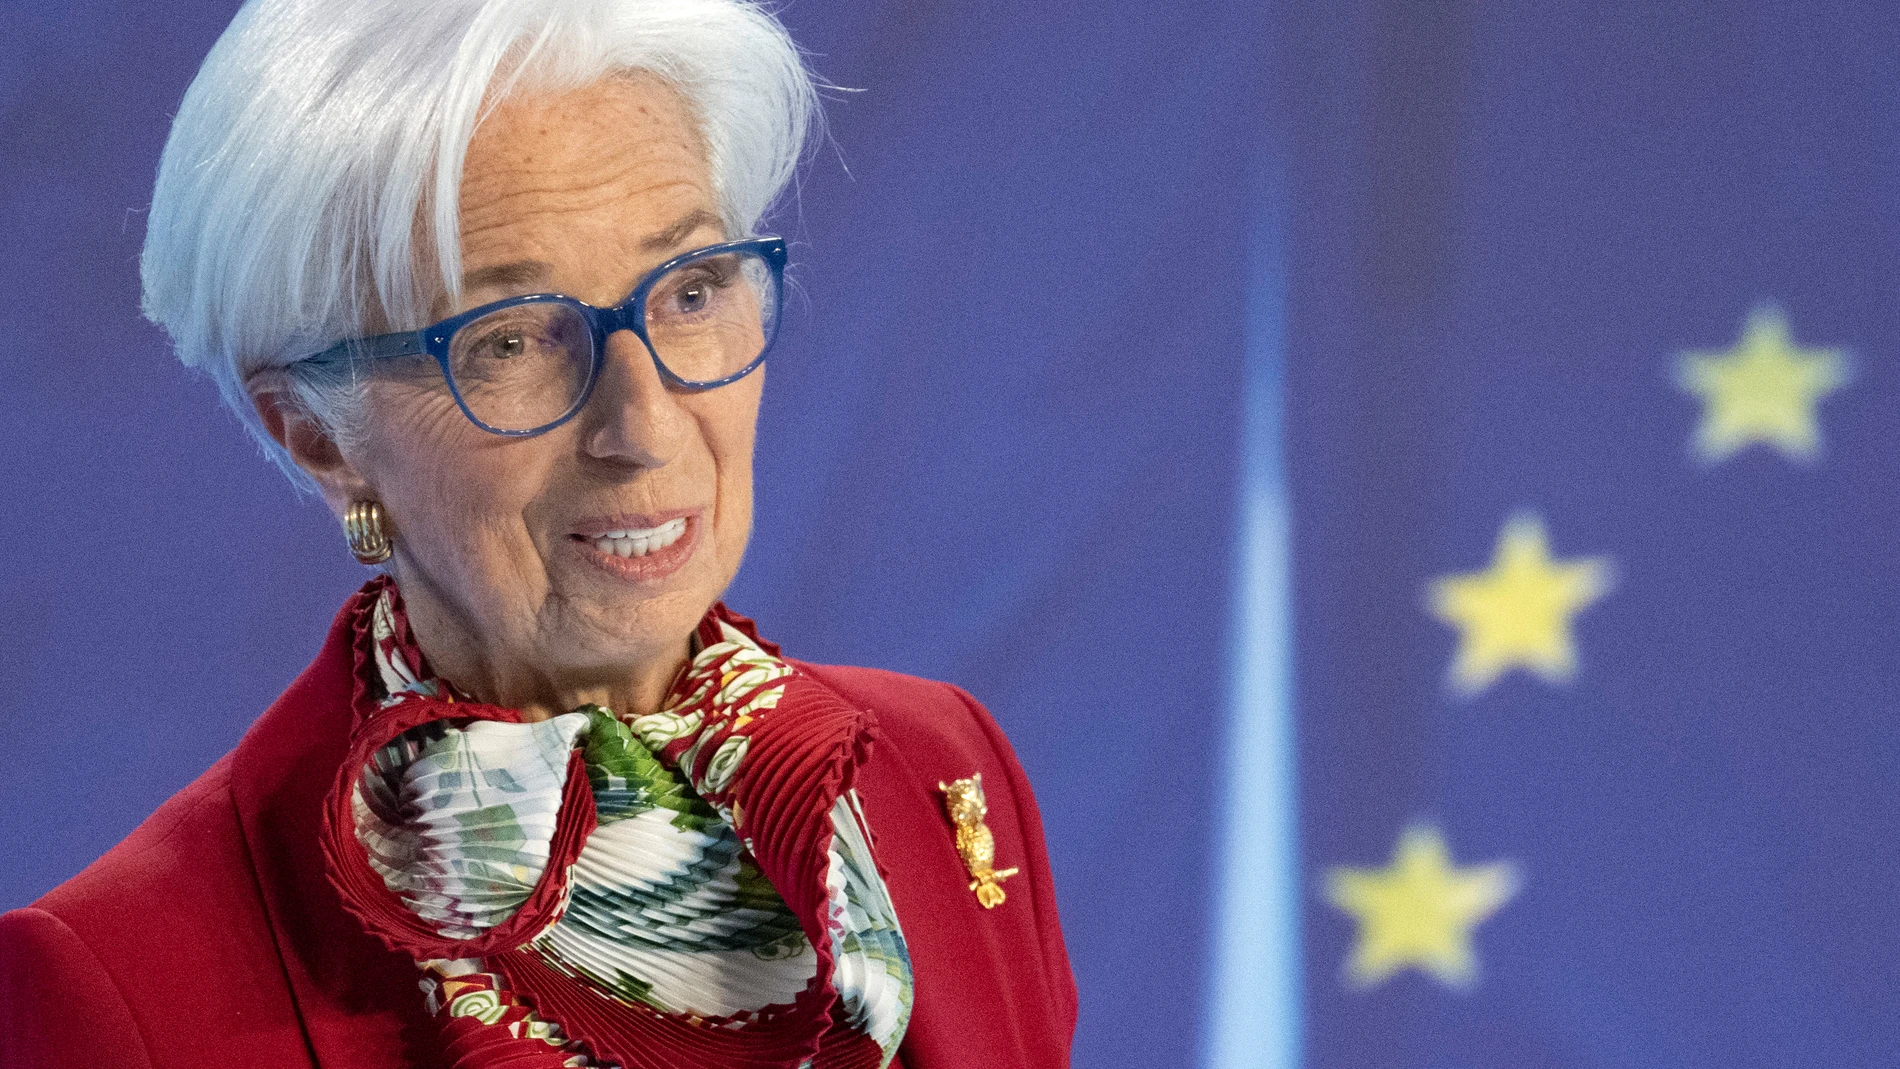 Europa.- Lagarde (BCE) avisa de un posible periodo de larga inestabilidad y menor crecimiento